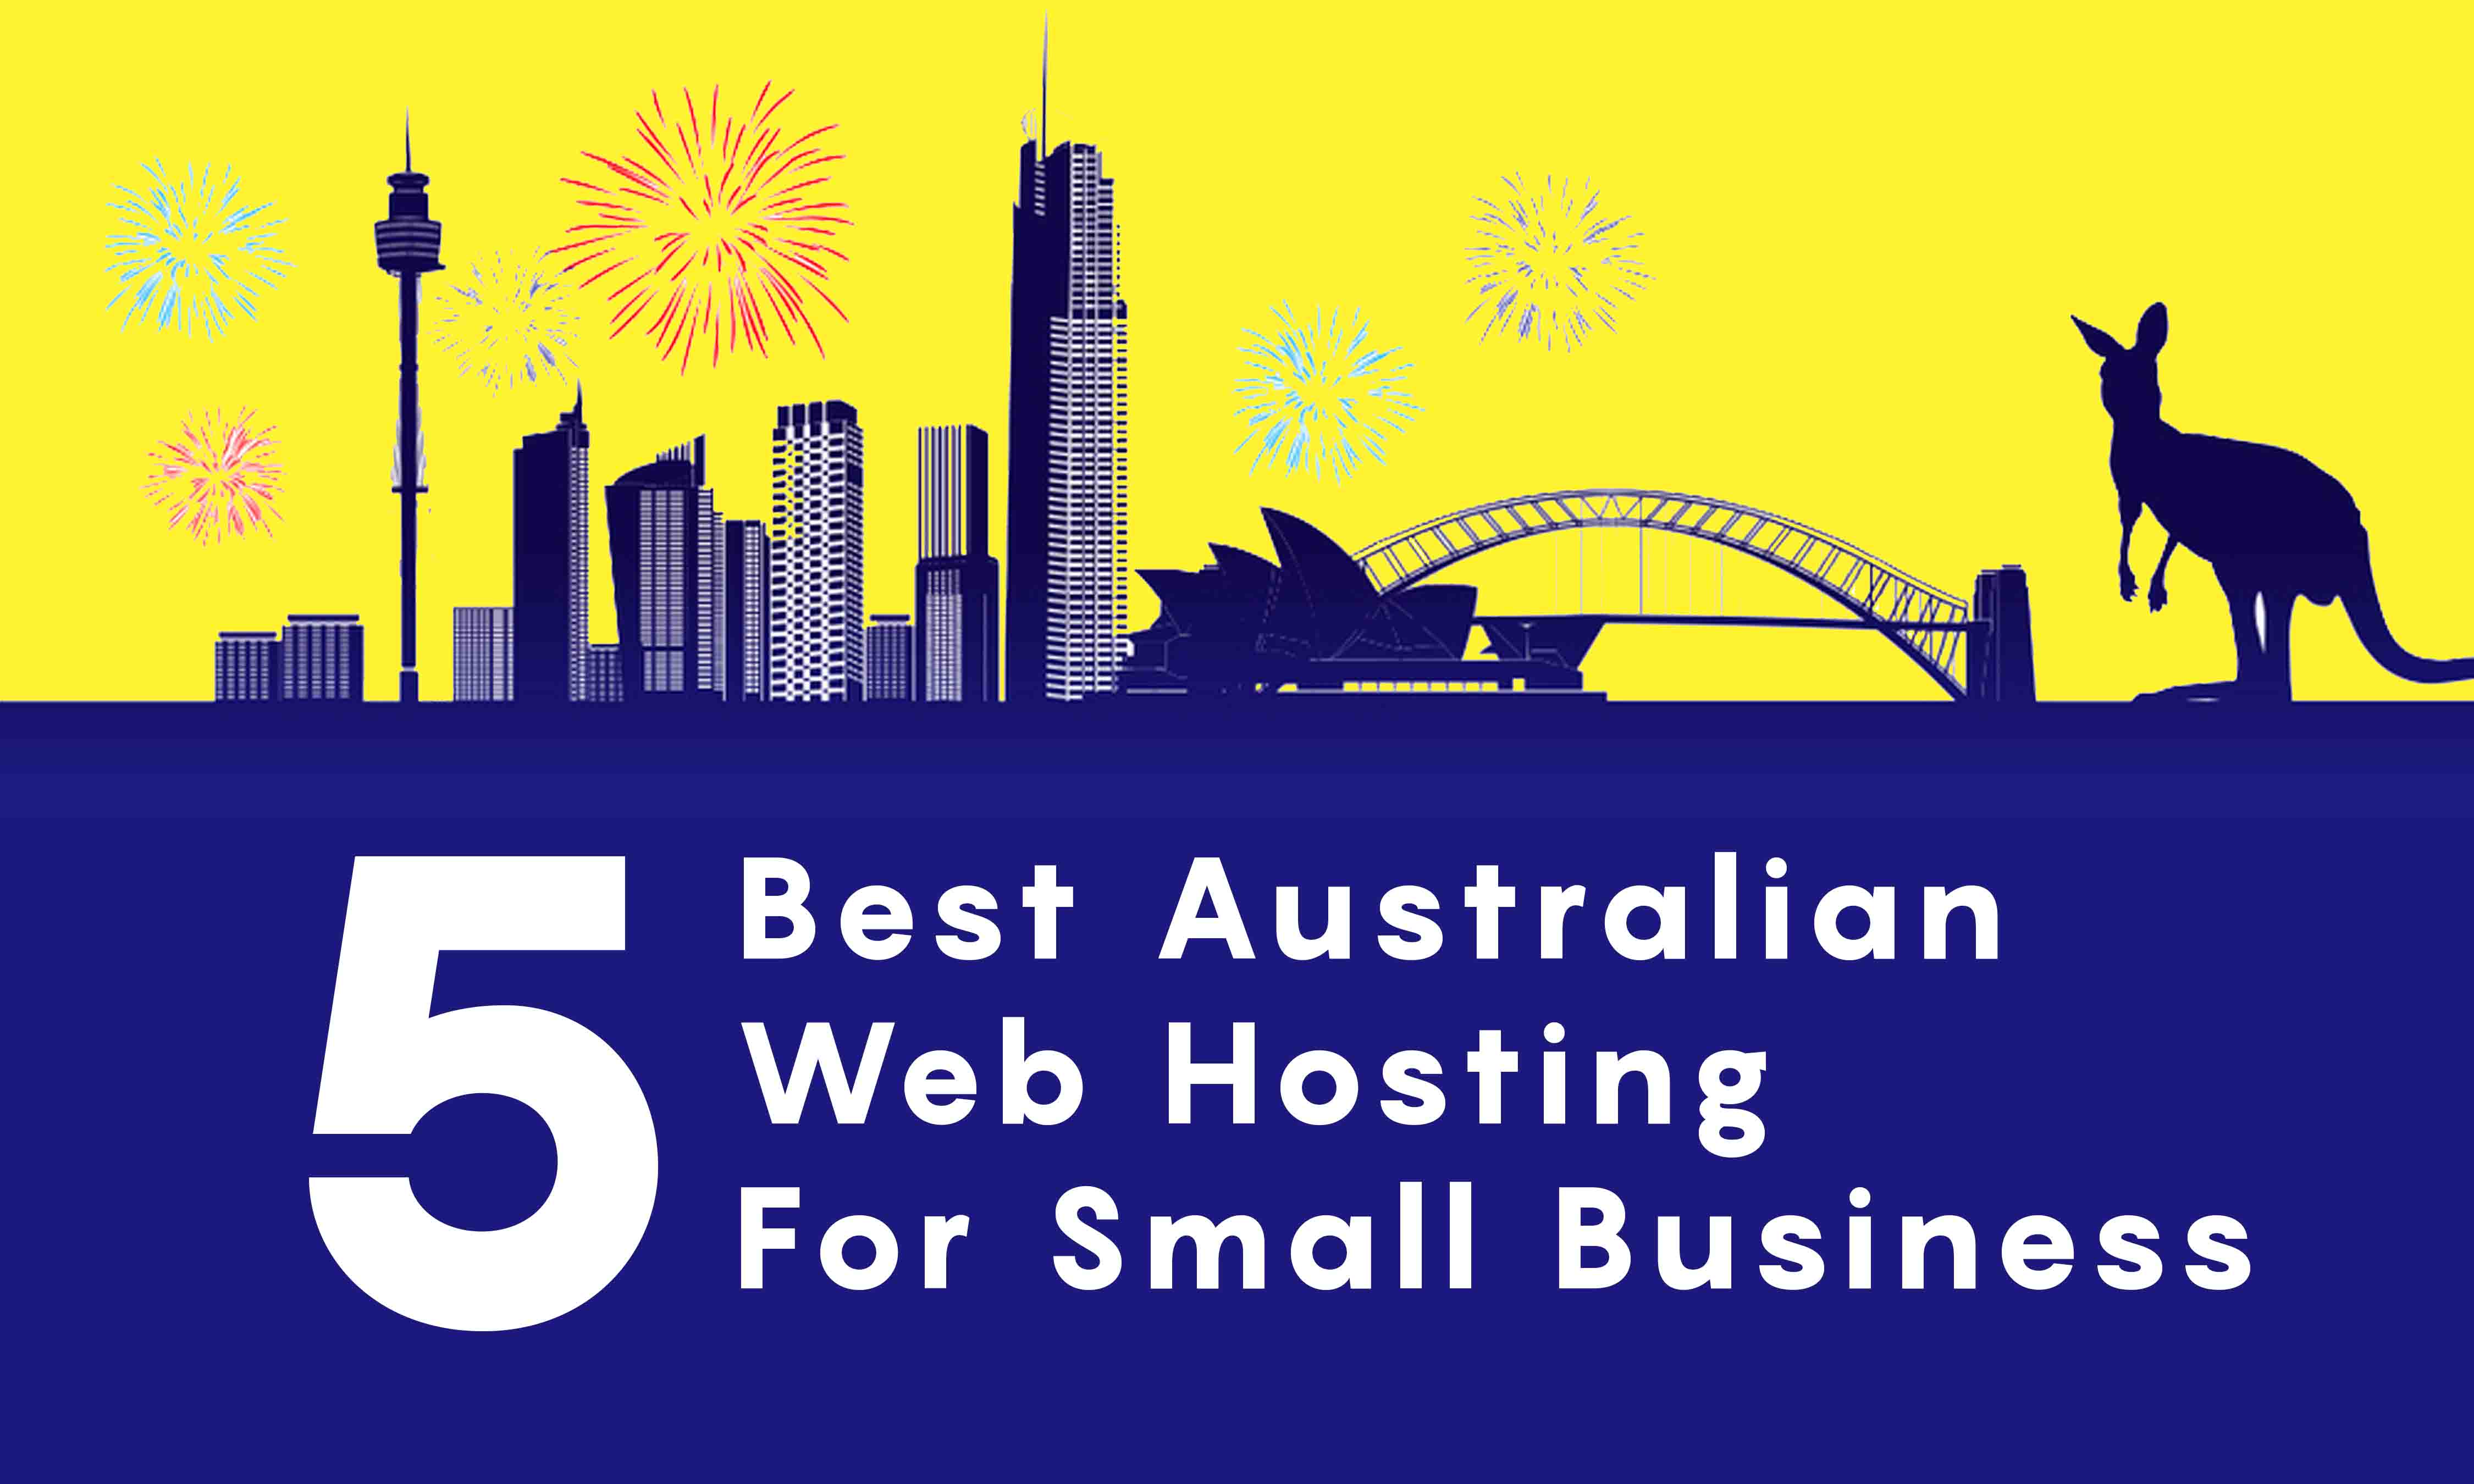 best australian web hosting for small business websites